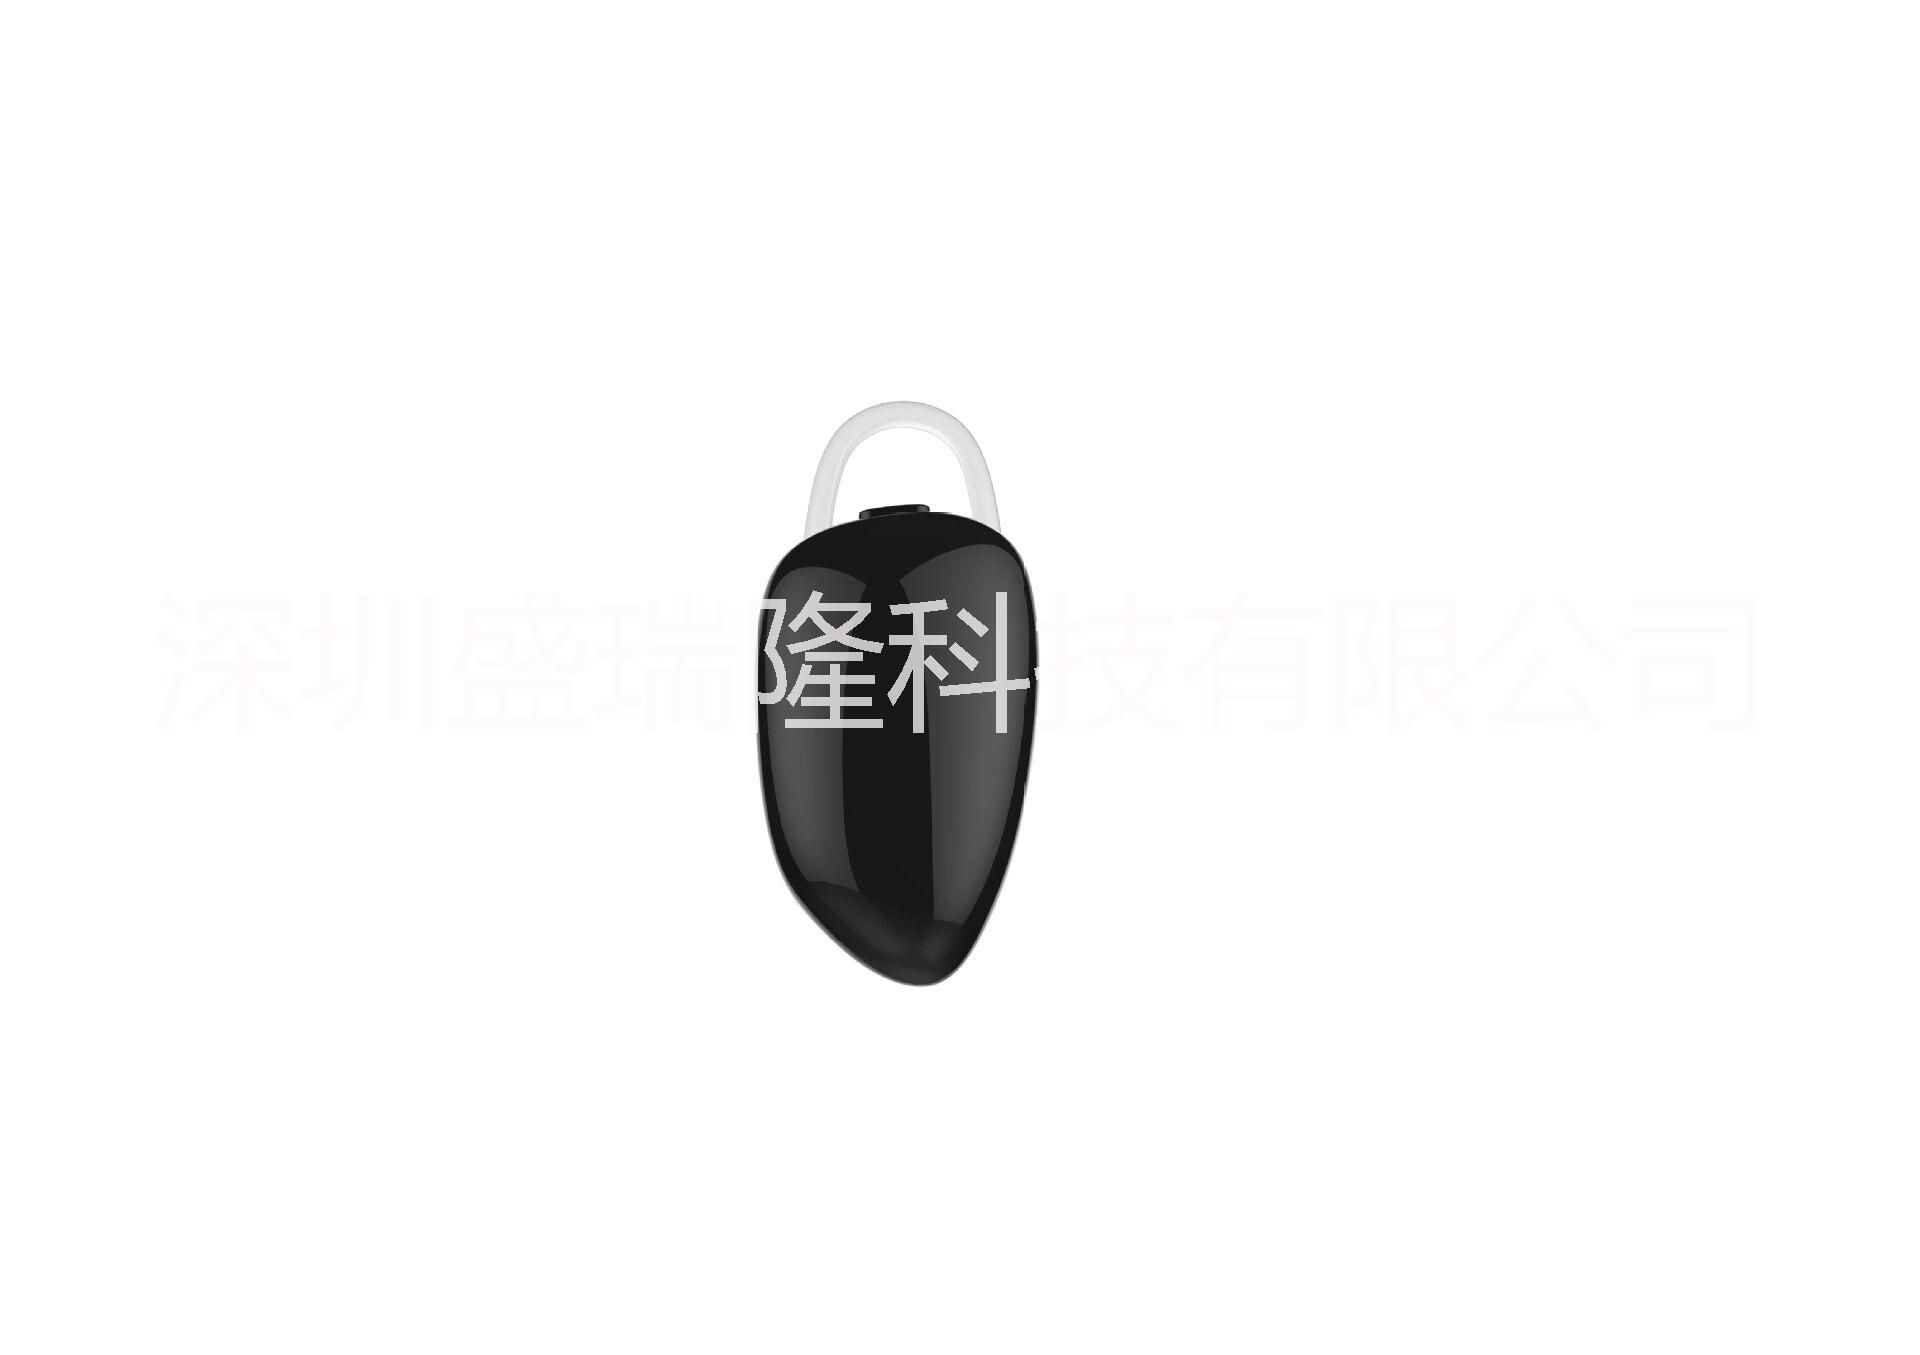 微型迷你盛瑞隆i7蓝牙耳机 耳塞式超小无线隐形4.0耳机 厂家直销